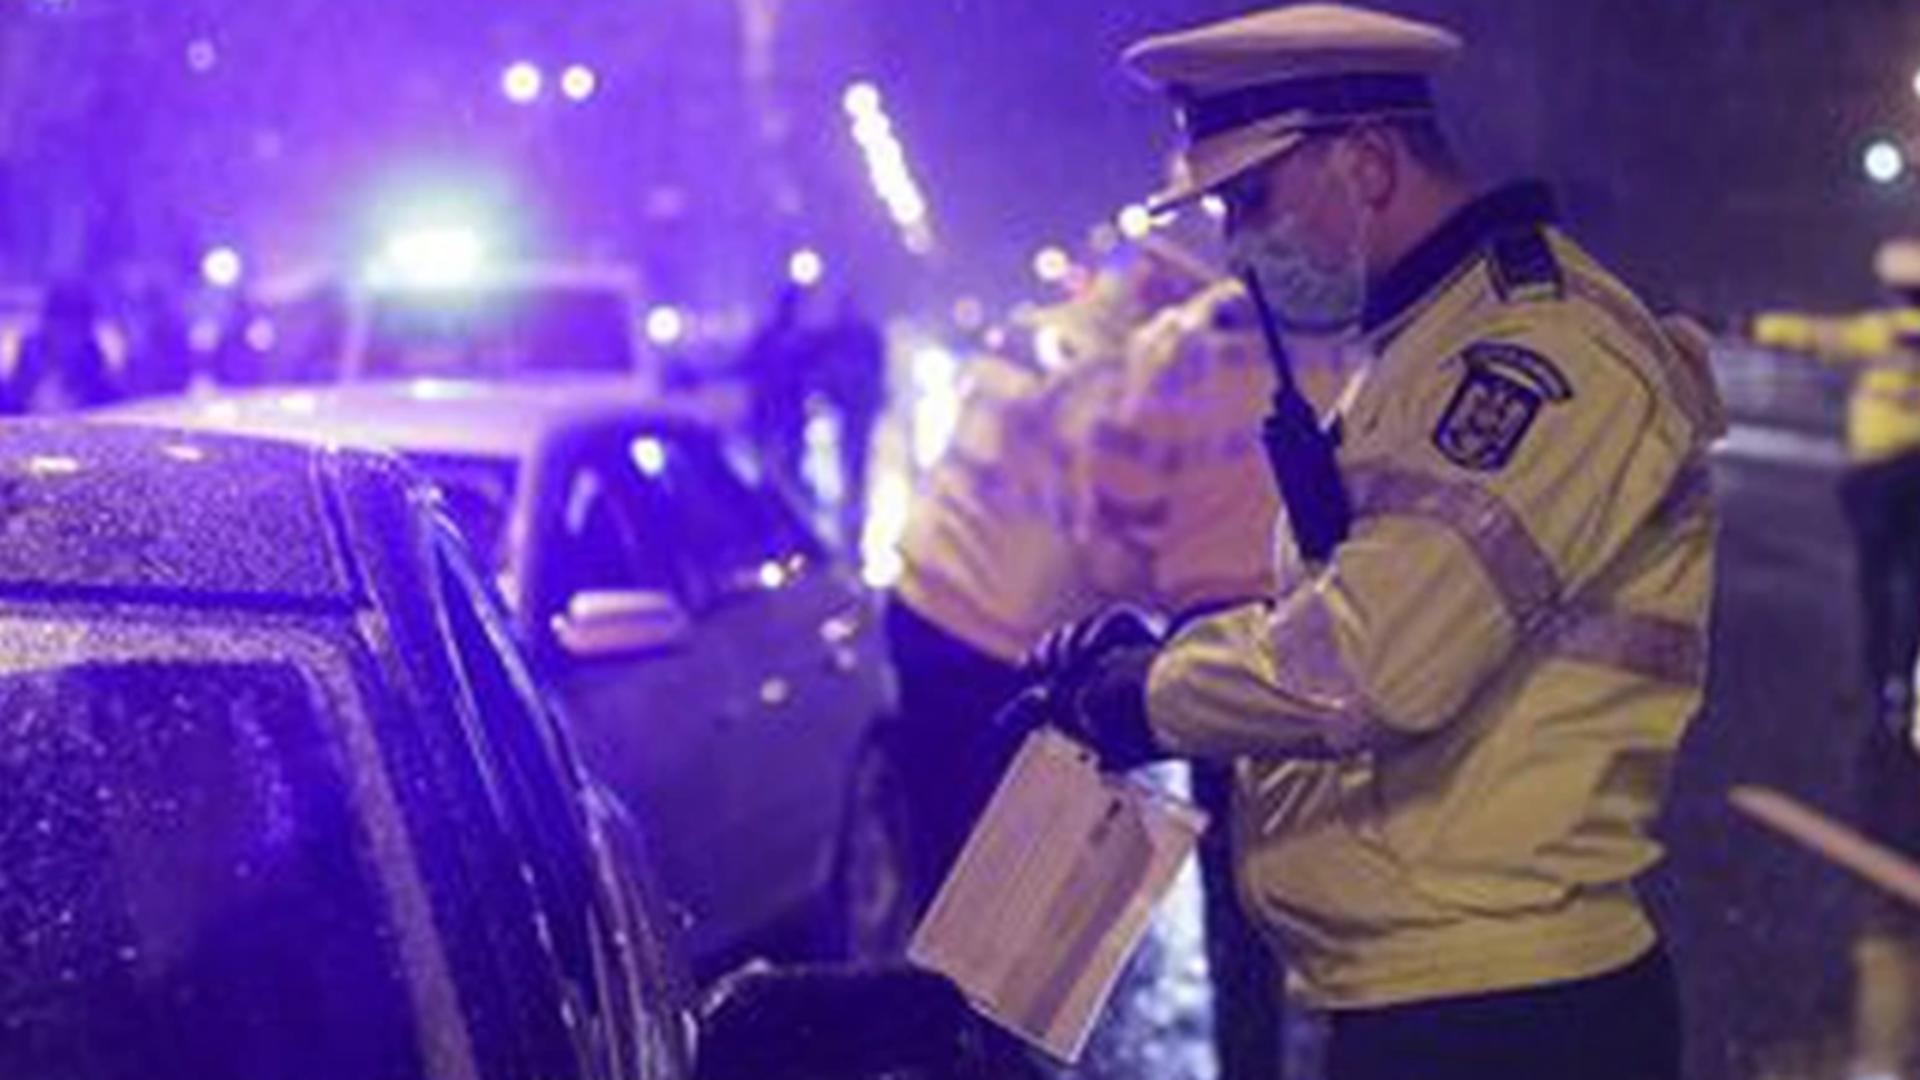 Carantina de noapte FOTO: Poliția Română 